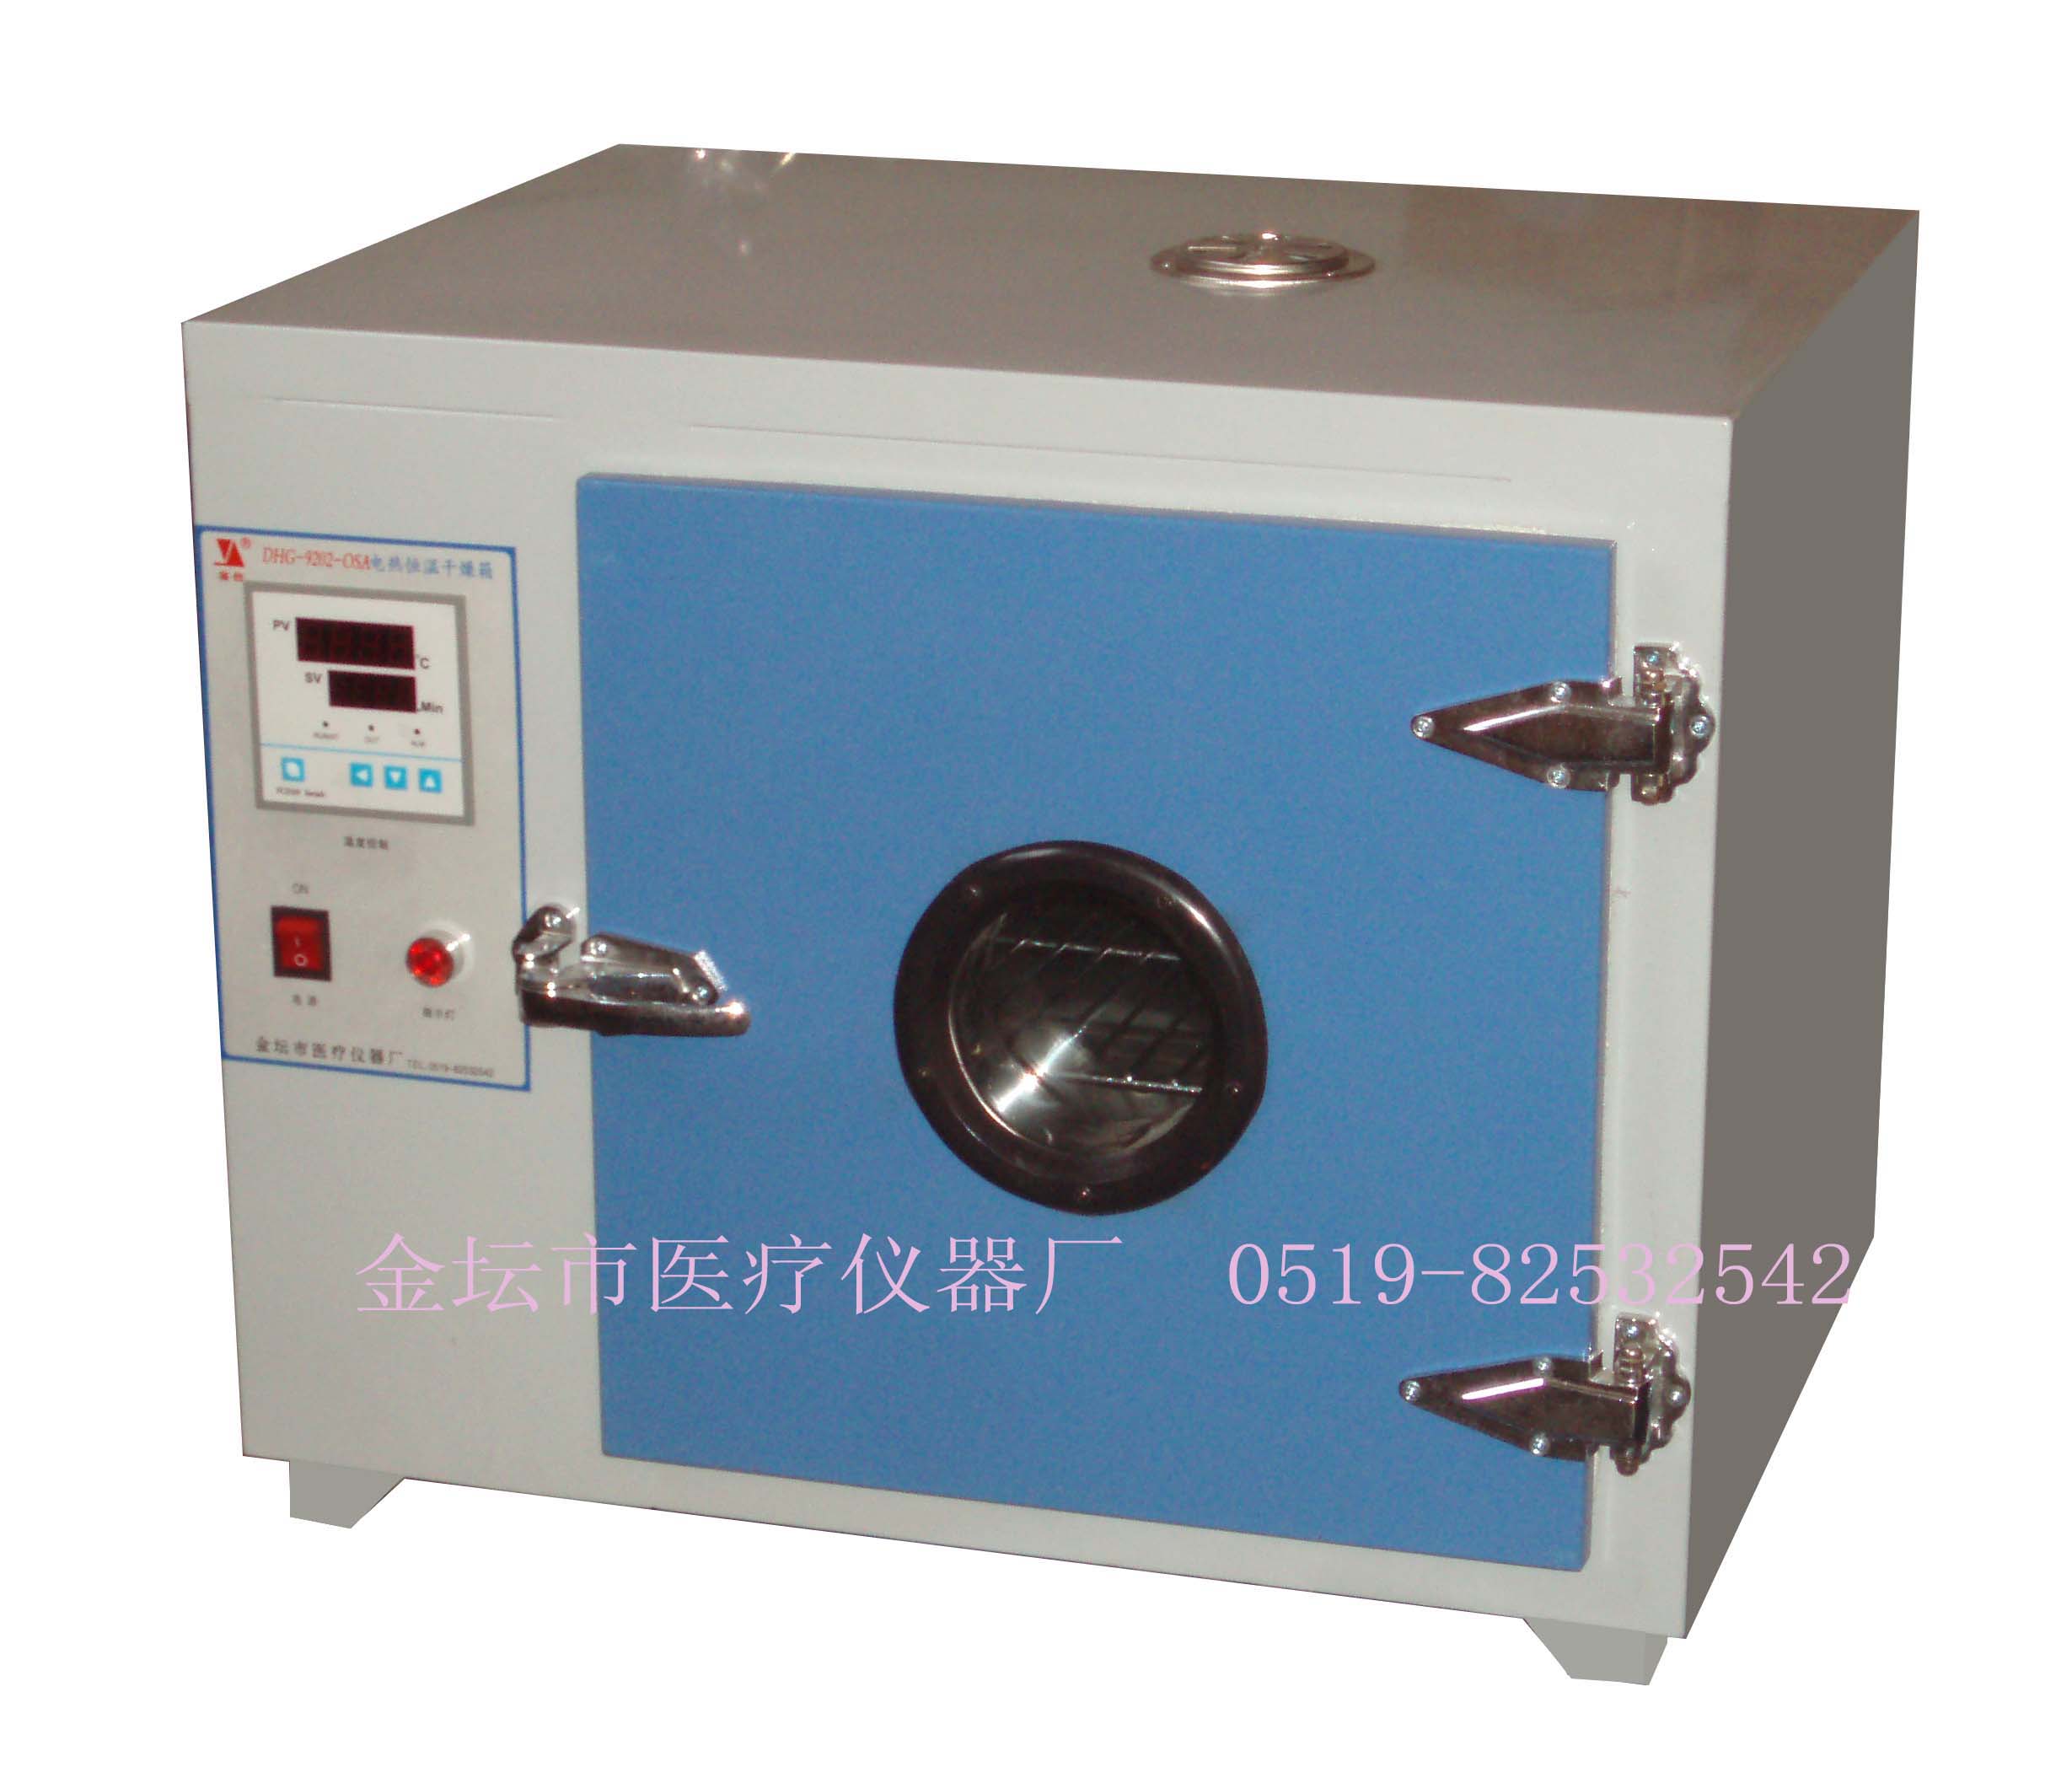 江苏金坛DHG-9202电热恒温干燥箱